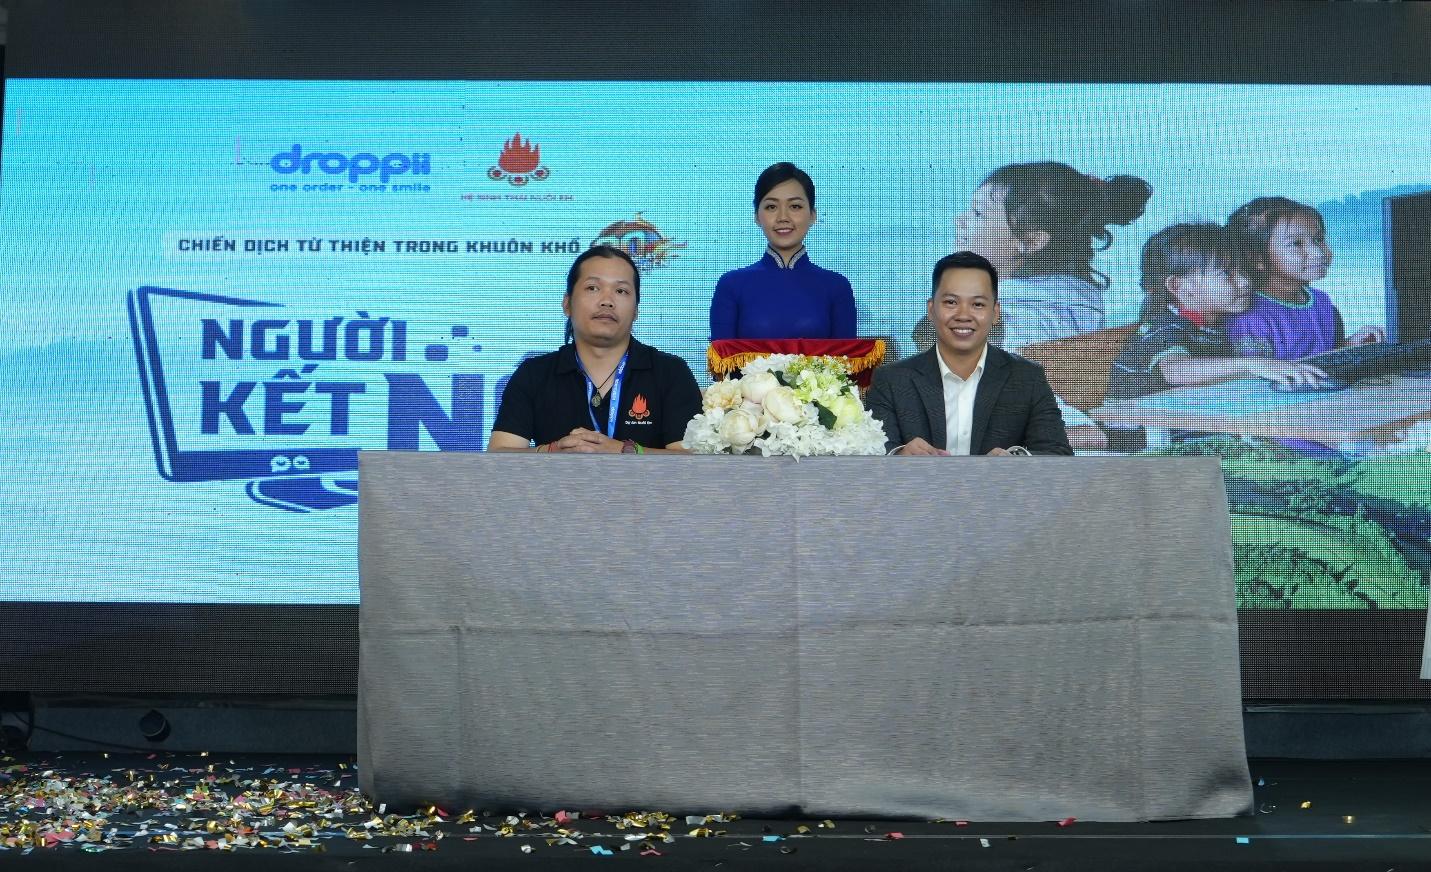 Ông Trần Thiên Ấn – CEO Droppii và Ông Hoàng Hoa Trung – Đại diện tổ chức “Nuôi em” ký kết hợp tác